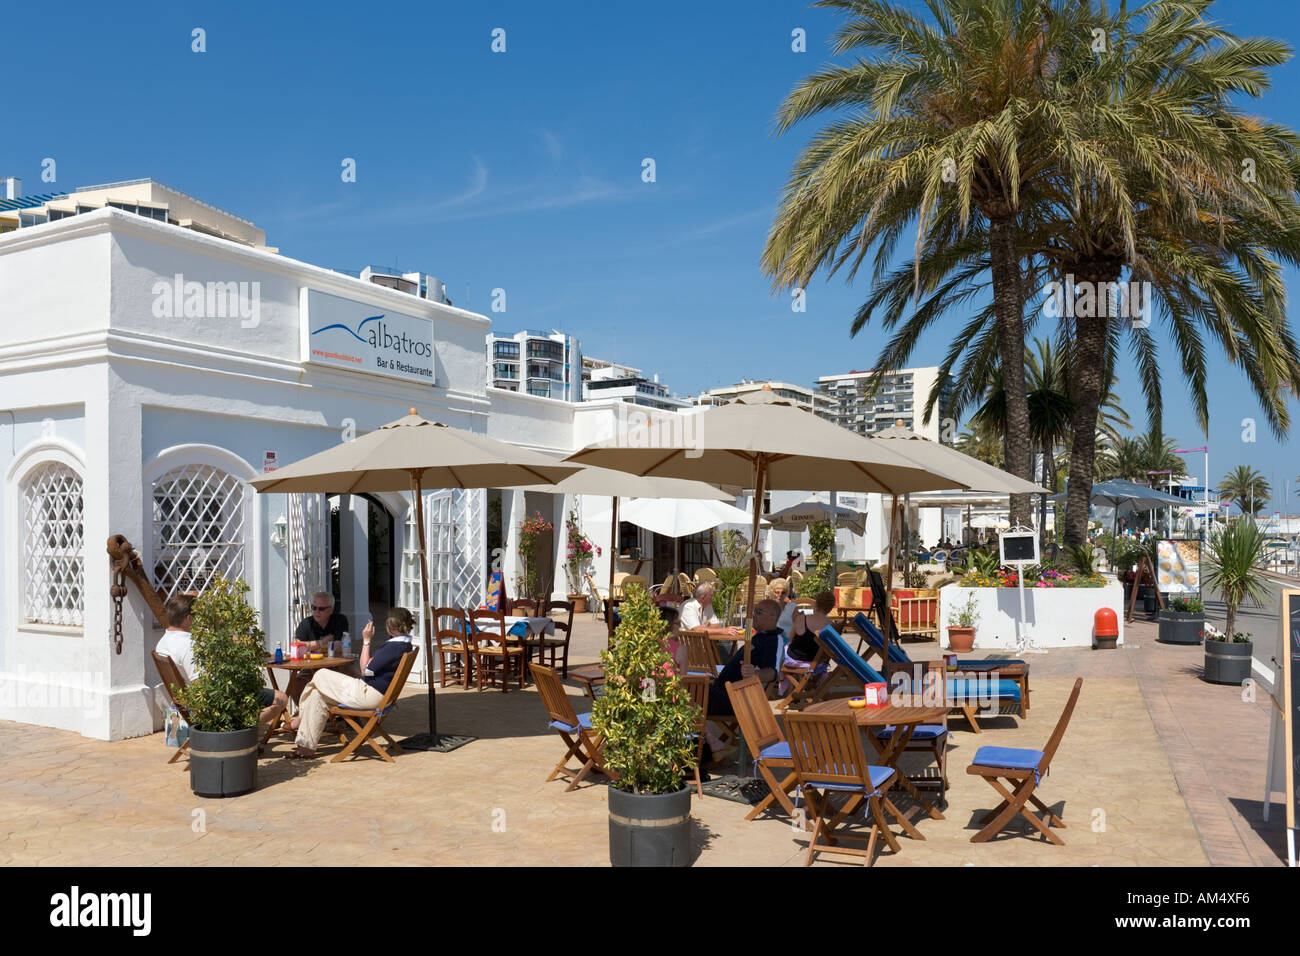 Restaurant in the Marina, Marbella, Costa del Sol, Andalucia, Spain Stock Photo